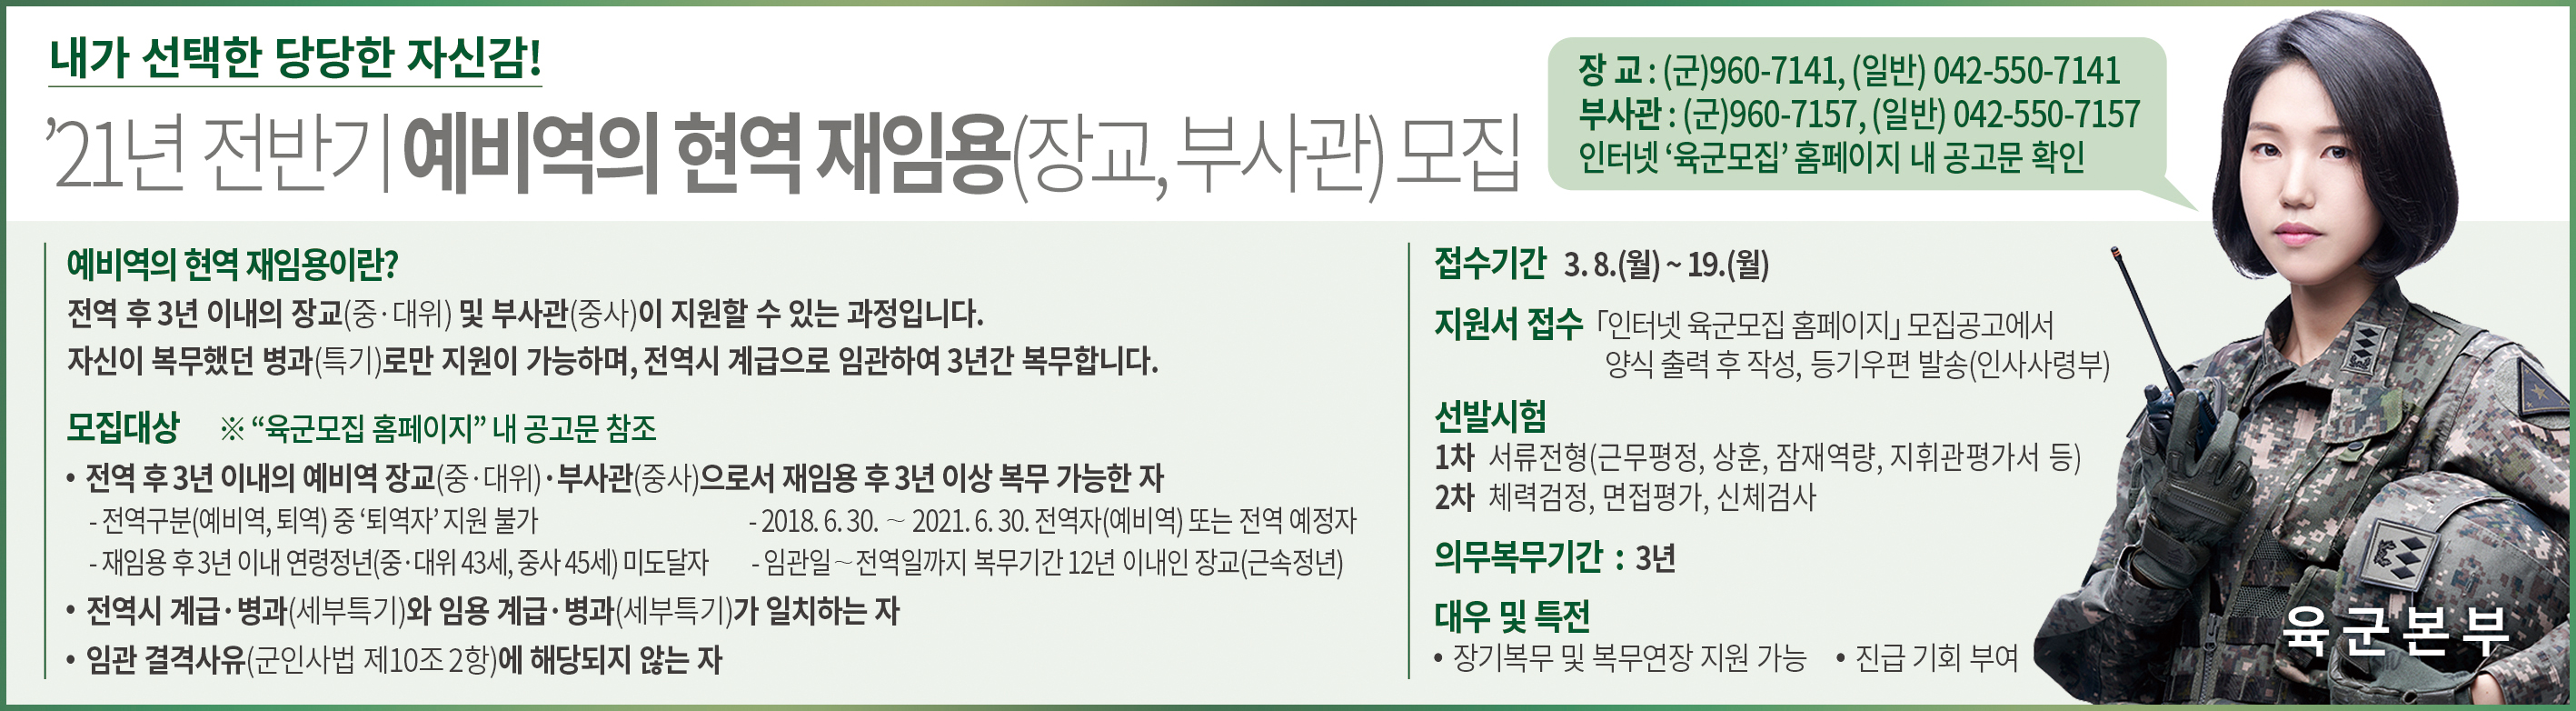 [병무] 육군간부 모집과정(21년 전반기 예비역의 현역 재임용) 안내